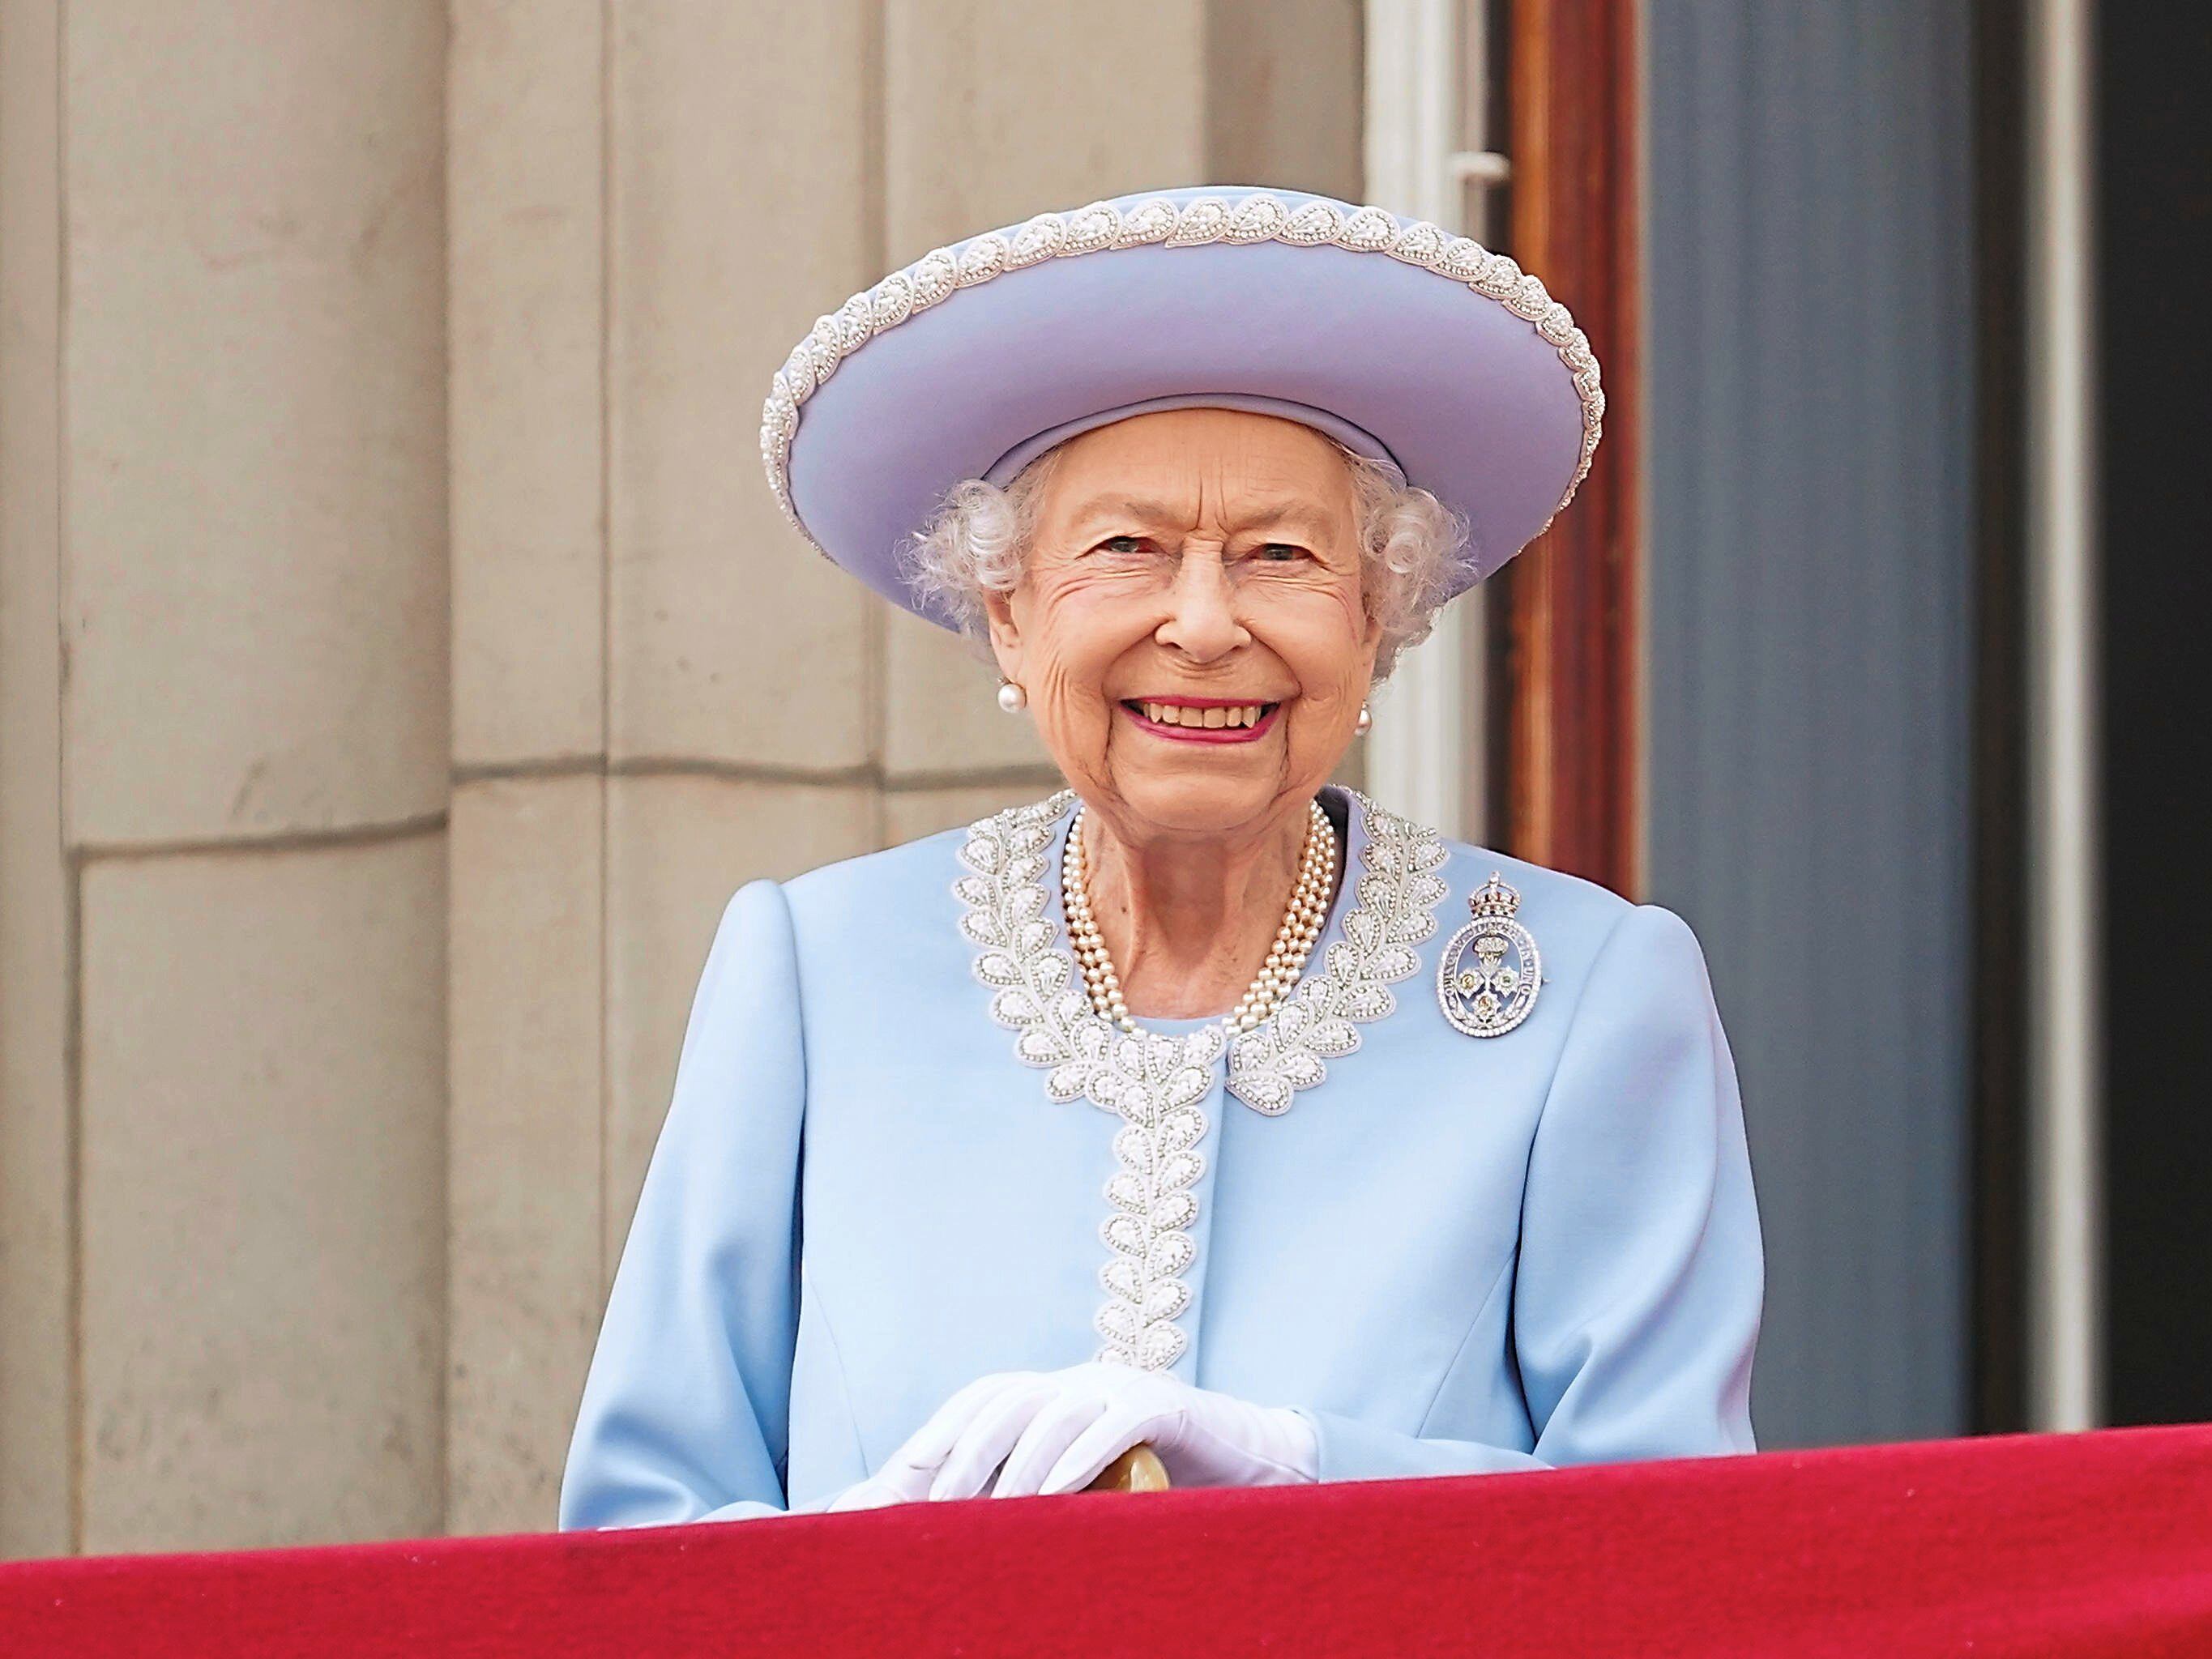 Thousands set to join doorstep clap in tribute to Queen Elizabeth II